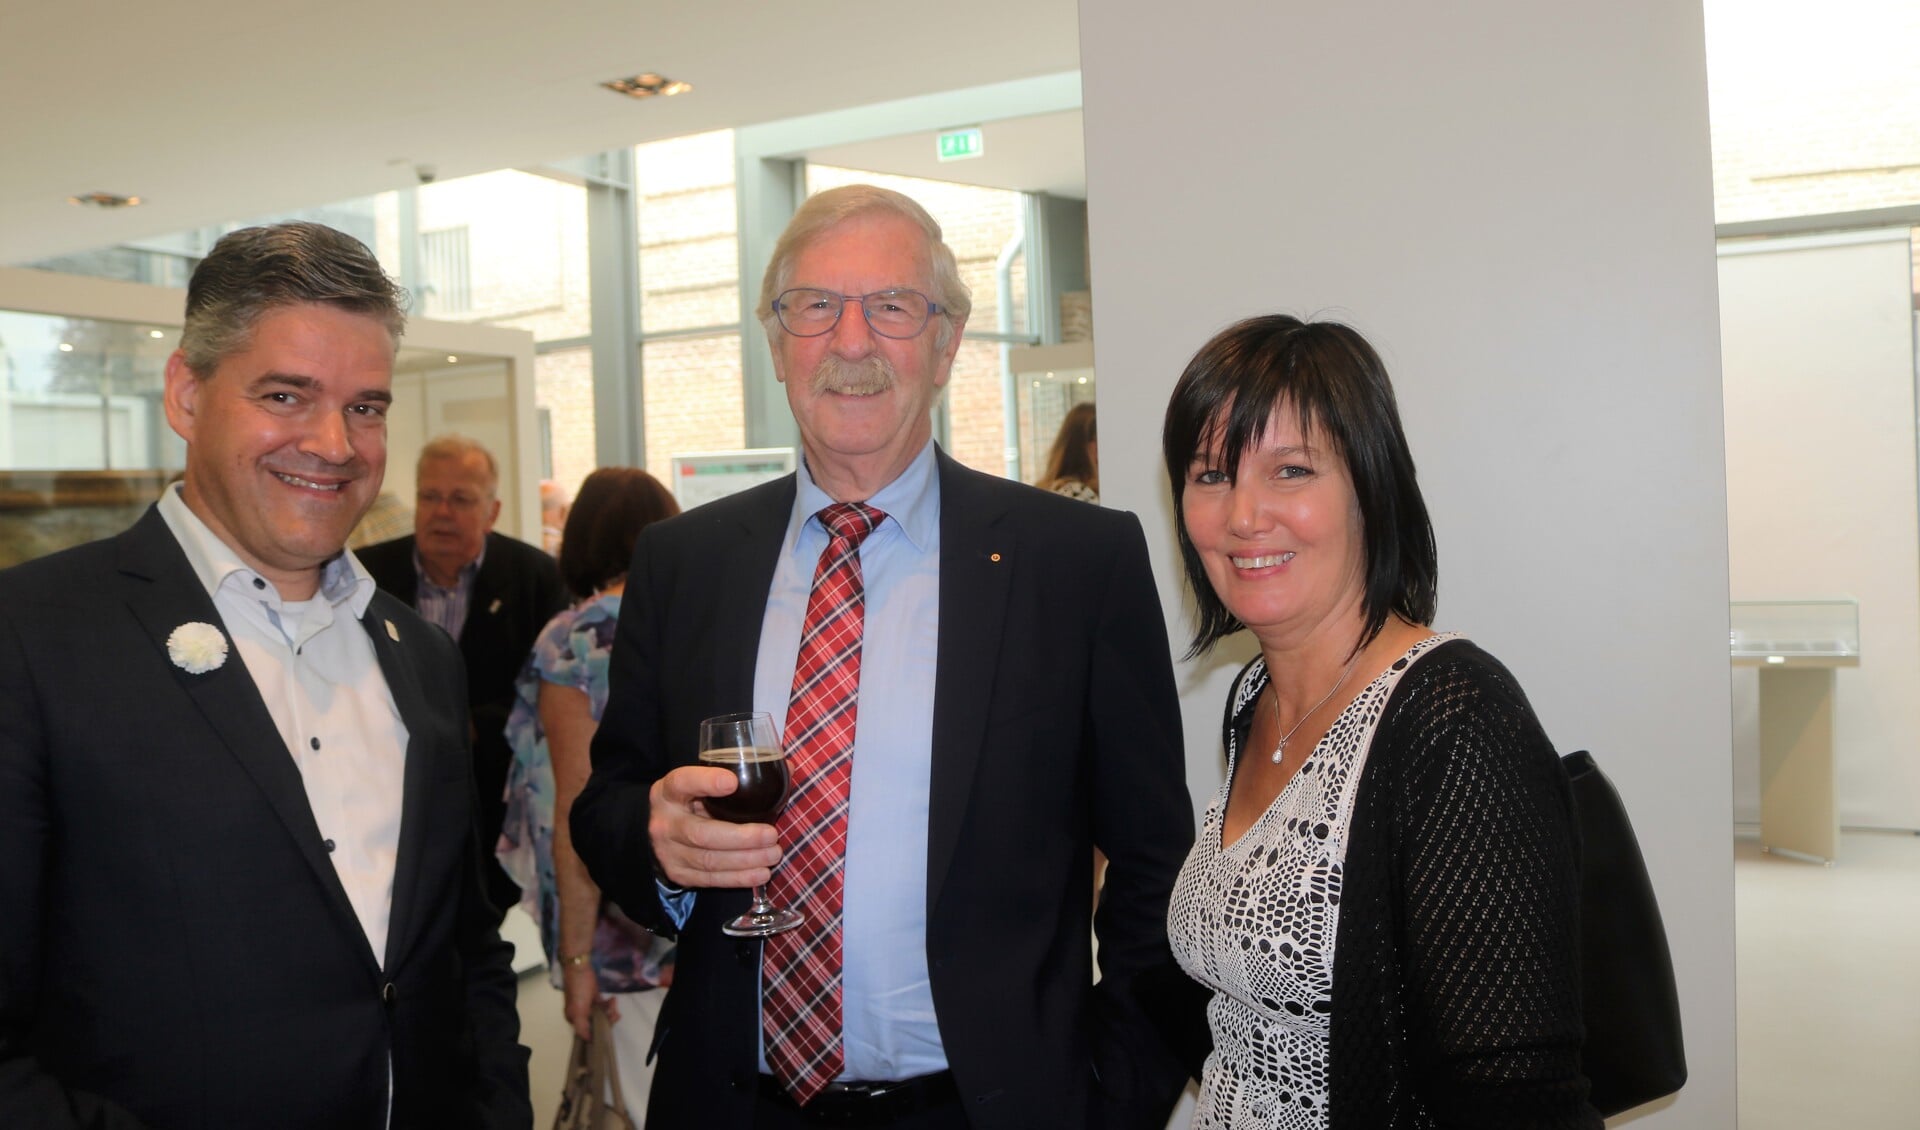 Veronique Lambert (rechts) in gesprek met Jan Timmermans (midden) en wethouder Daandels (links)  bij de opening van de tentoonstelling Jan van Cuyck.